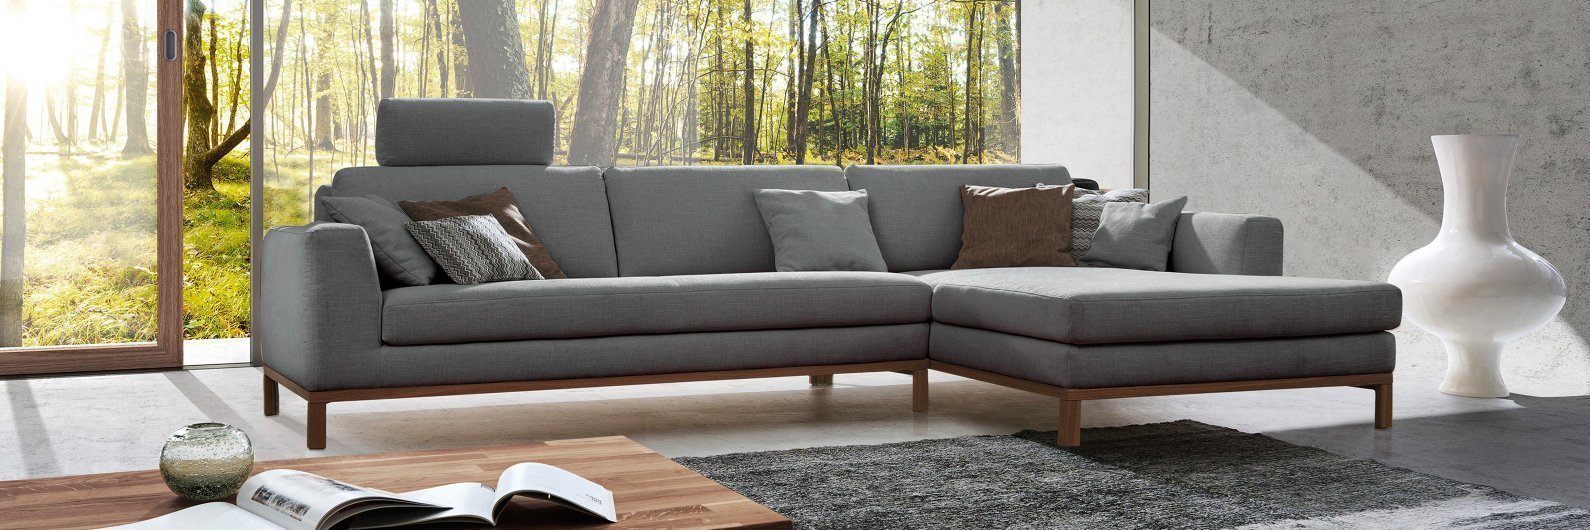 ADA Premium Modelle Möbel Letz Ihr Einrichtungsexperte